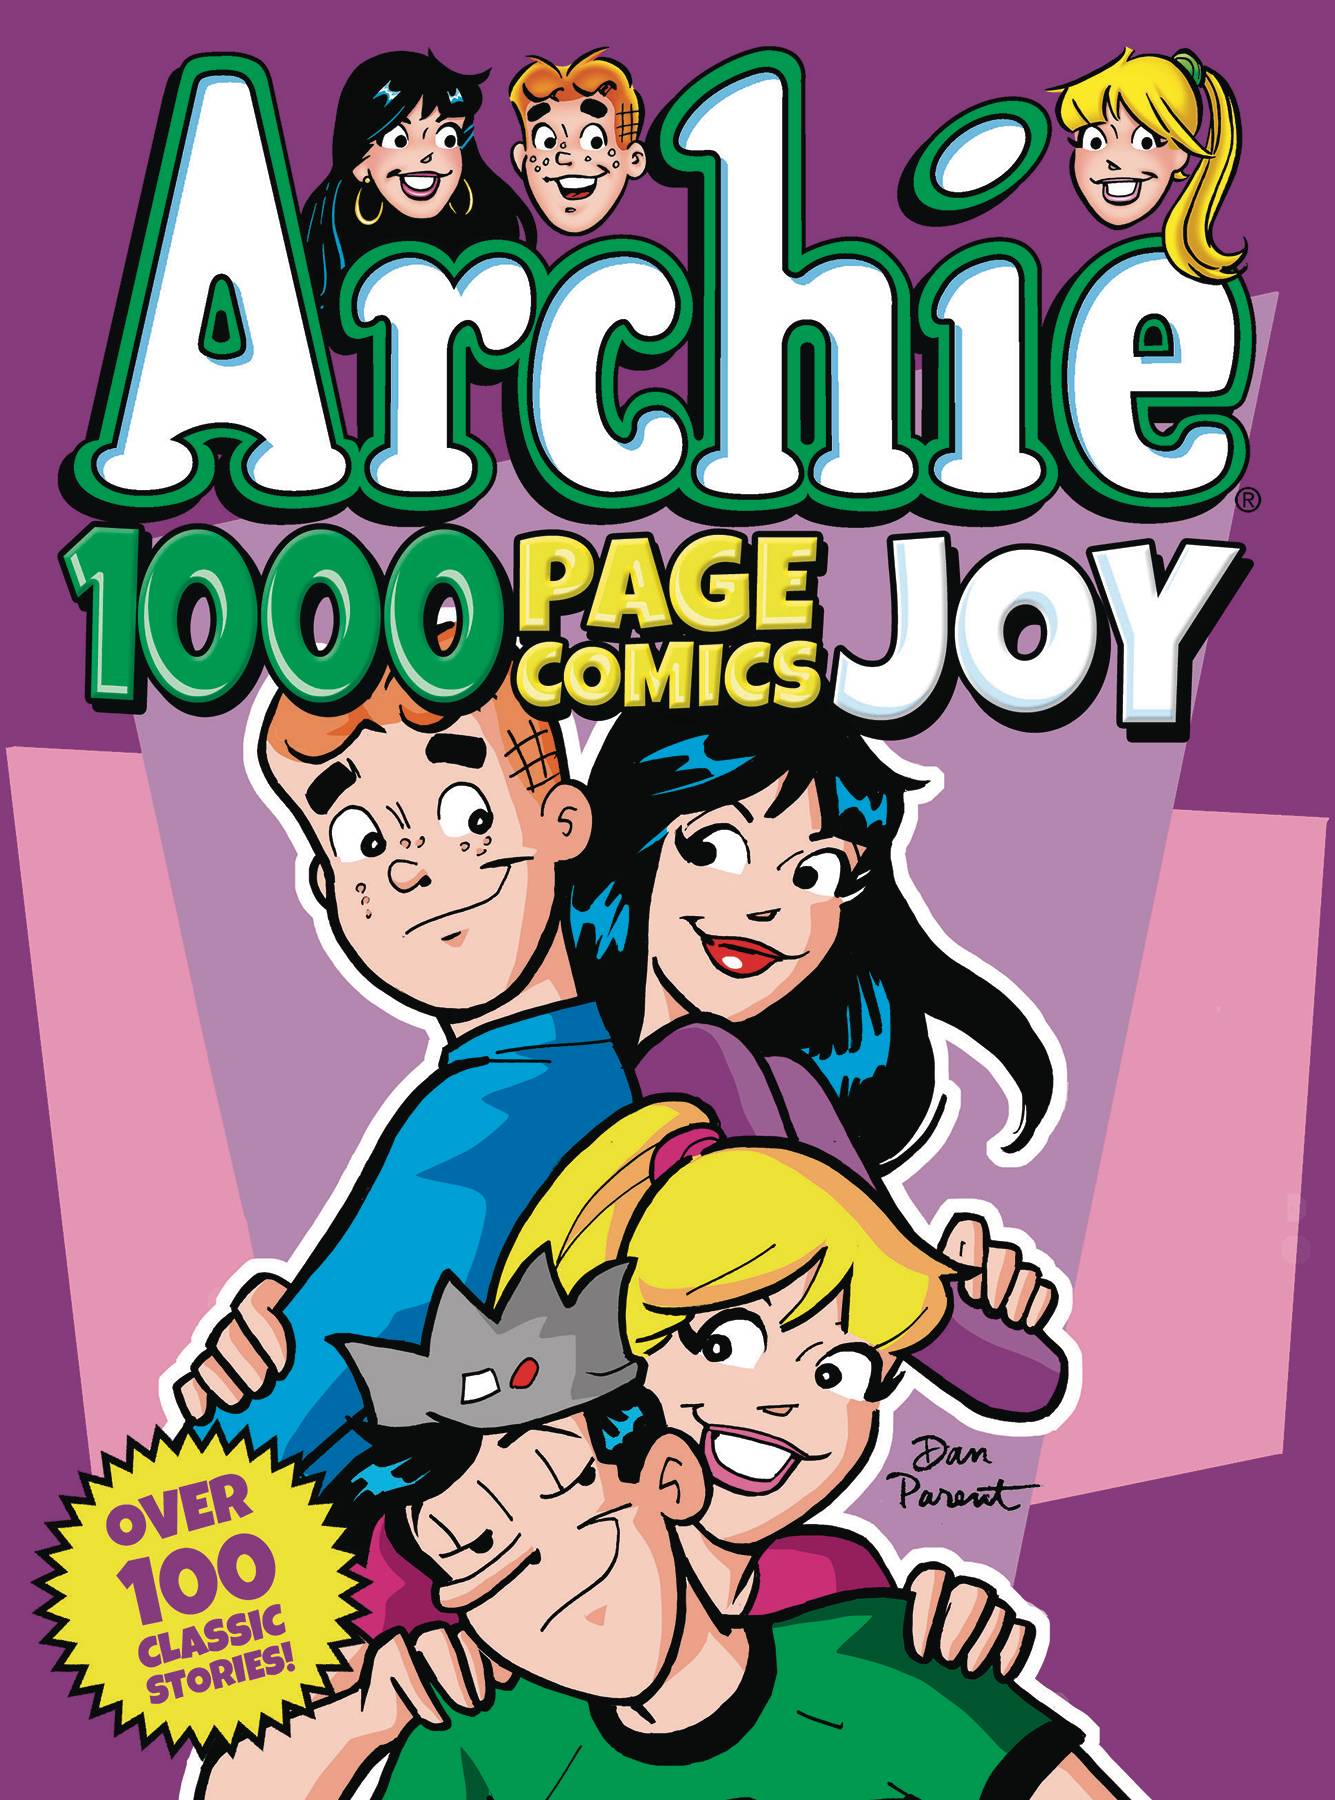 Archie 1000 page comics joy tp (DEC191442) .